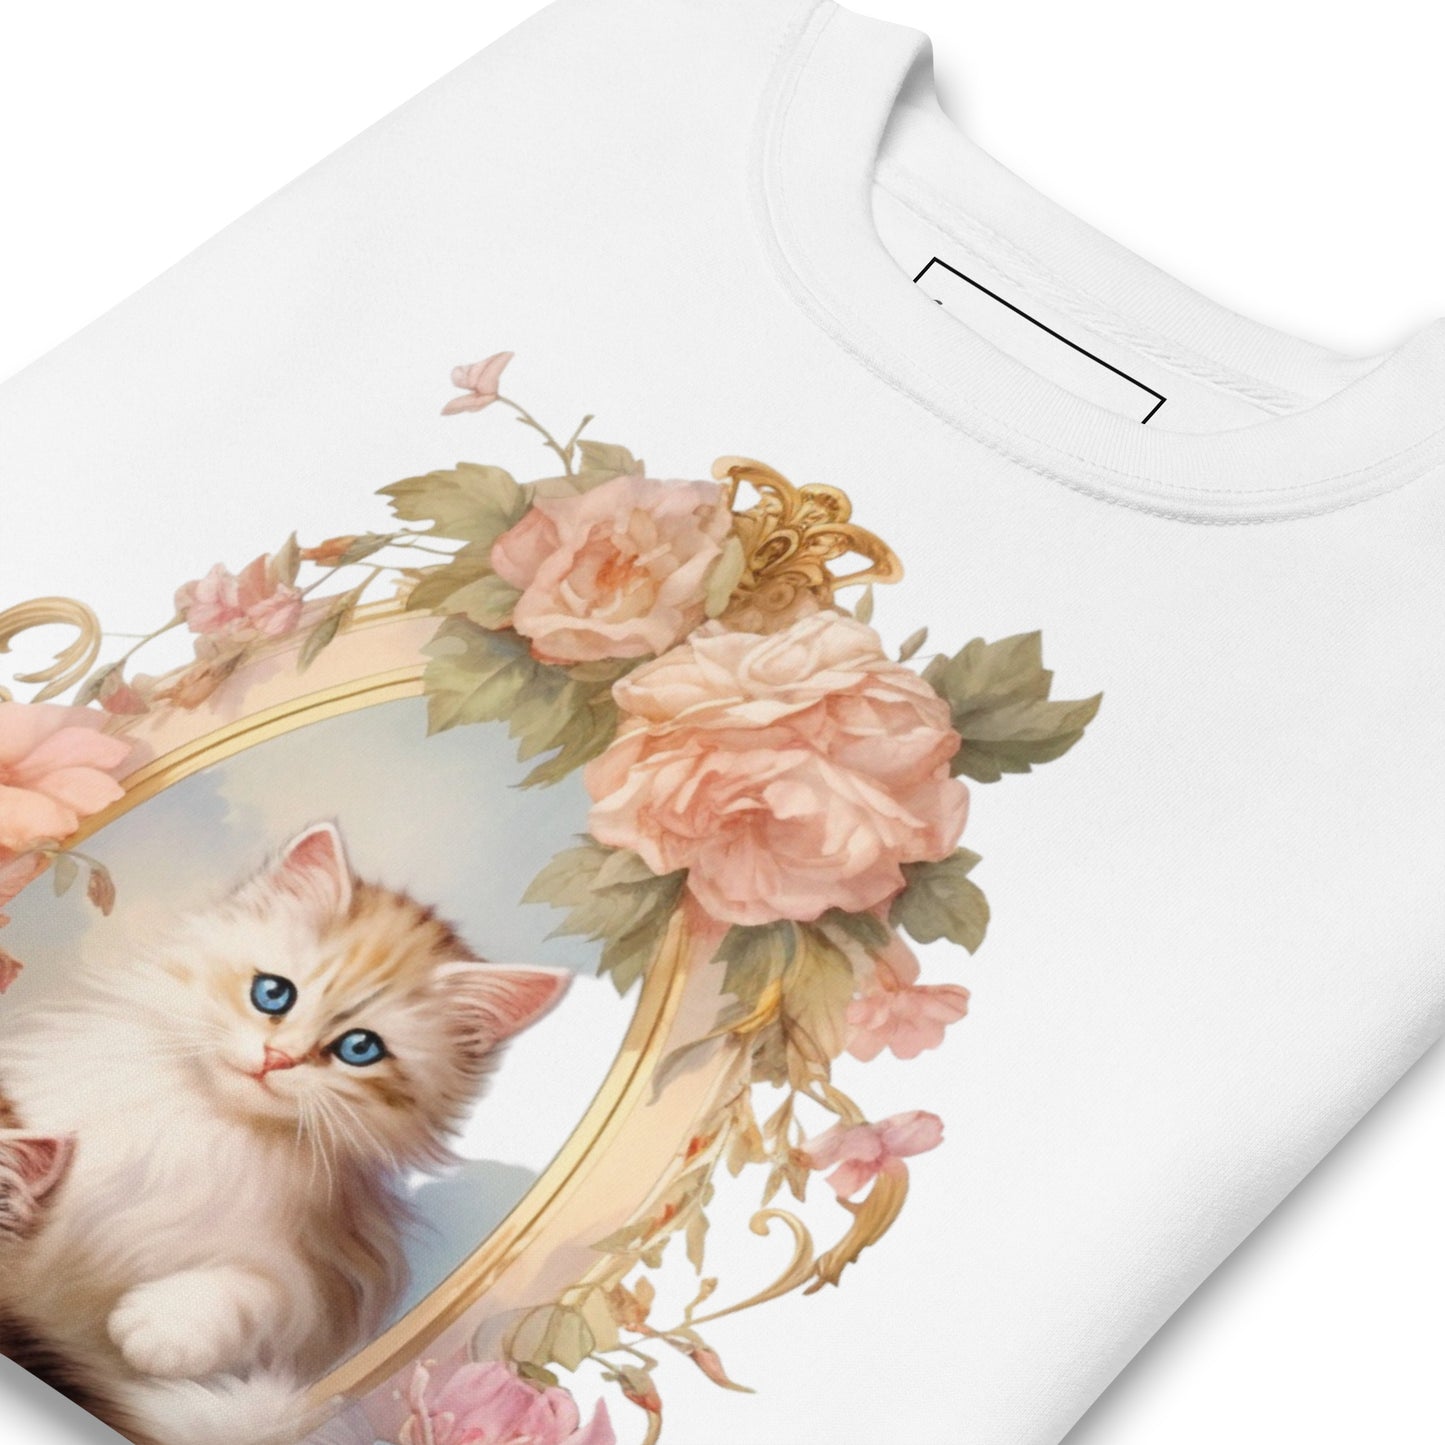 Rococo Kitty Sweatshirt